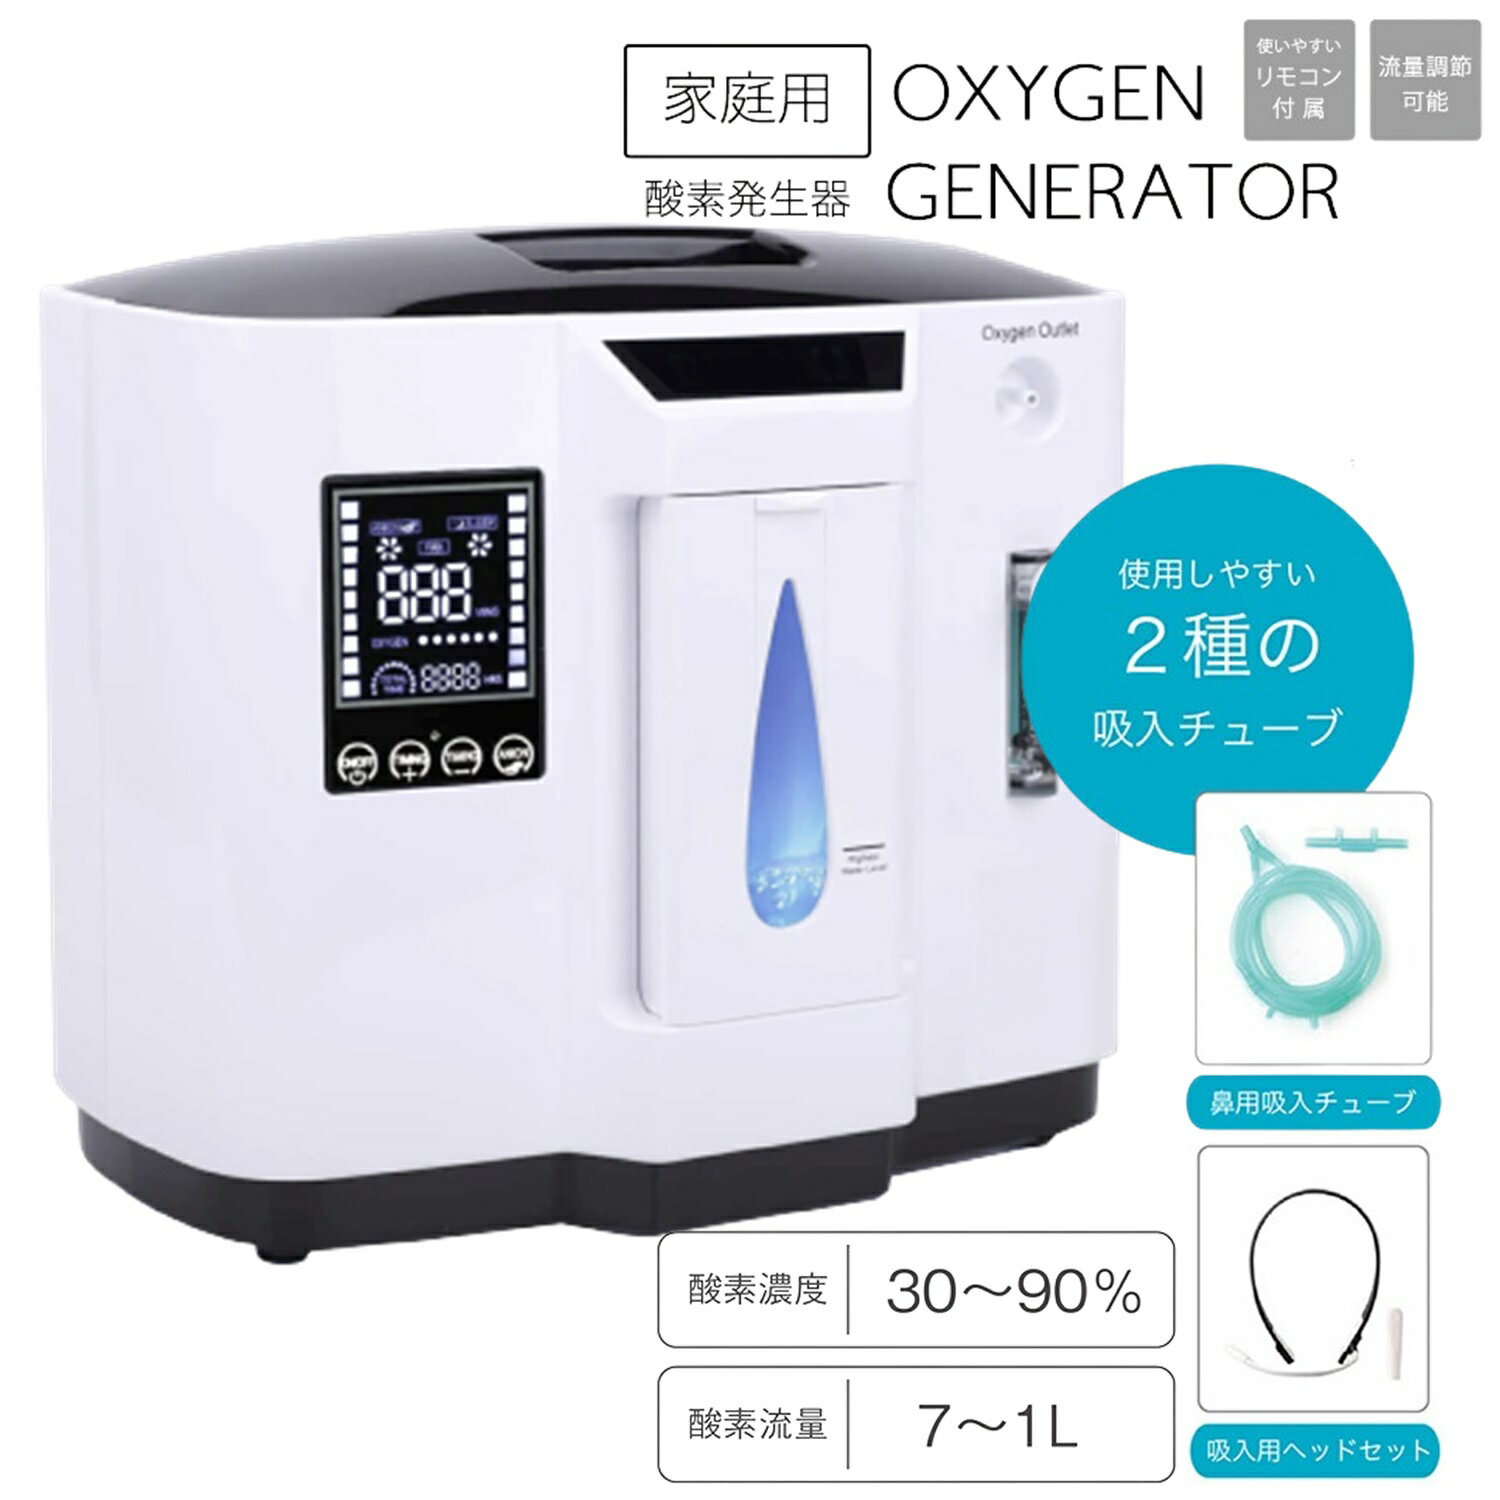 家庭用酸素発生器 酸素発生器 酸素 発生 酸素吸引機 酸素濃縮装置 ポーダブル酸素発生器 疲労回復 早期回復 軽量 コンパクト